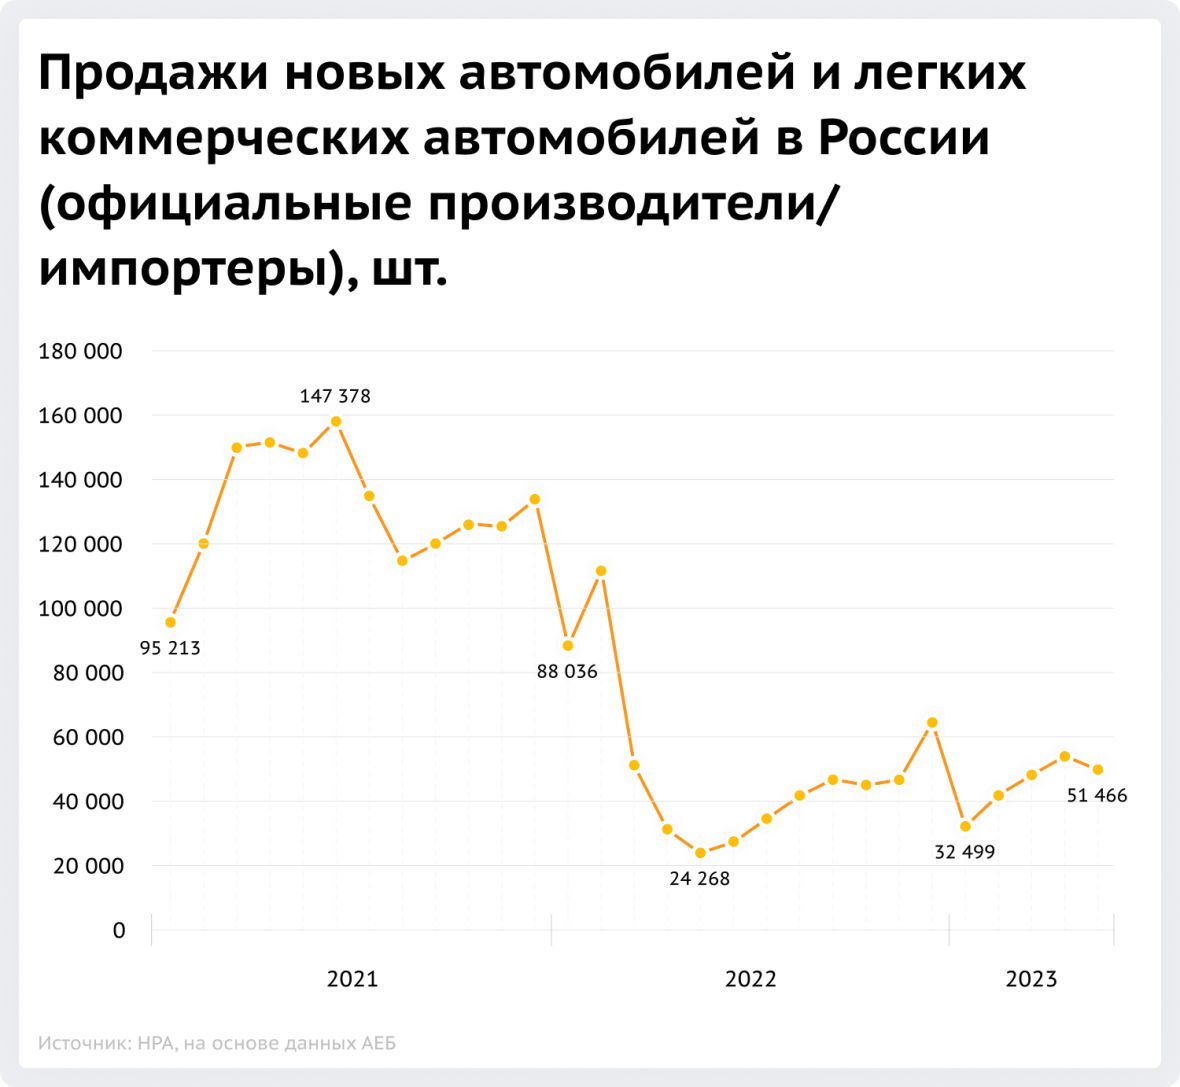 Продажи новых автомобилей и легких коммерческий автомобилей в России (официальные производители/импортеры), шт.